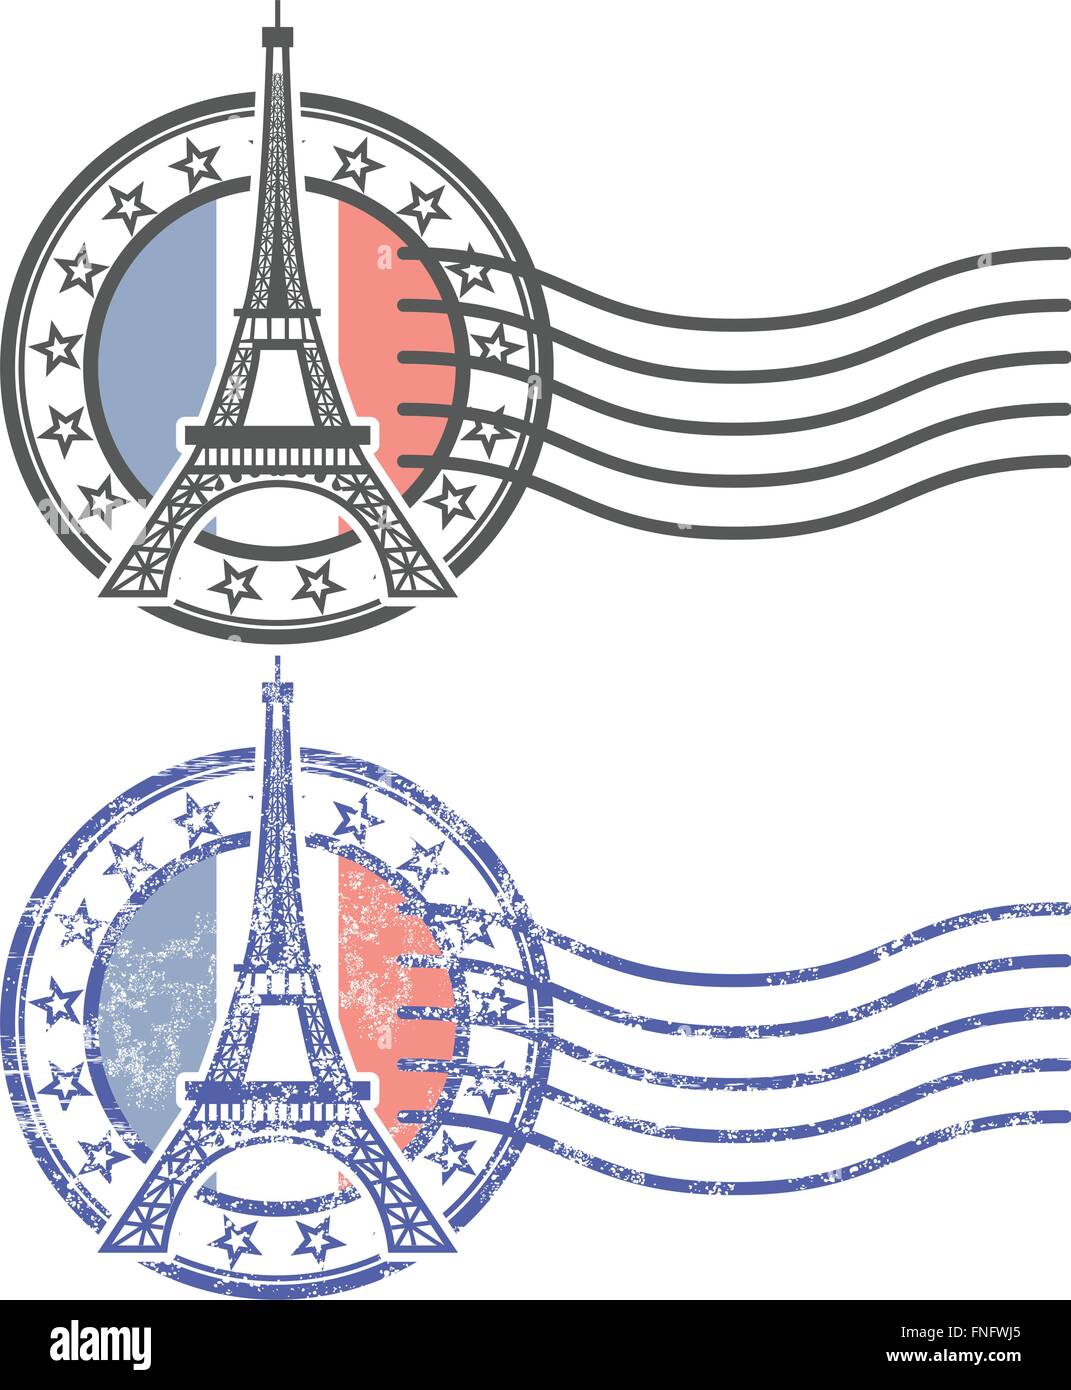 Grunge Stempel mit Eiffelturm - Wahrzeichen von Paris. Stock Vektor